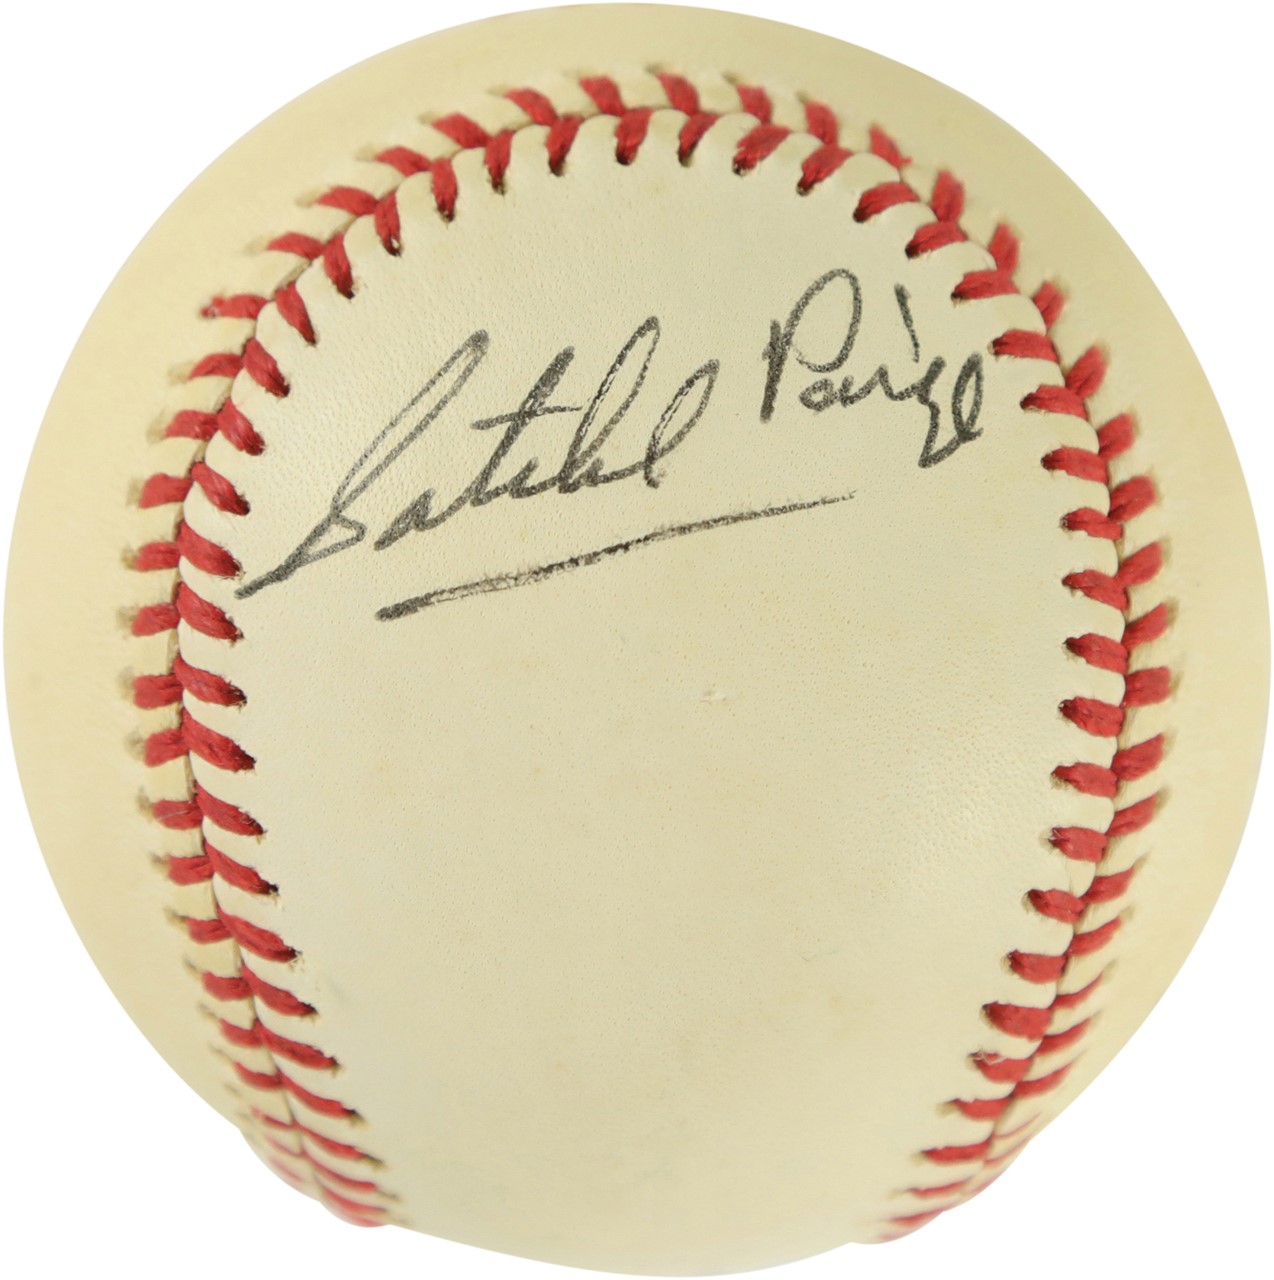 - Satchel Paige Single-Signed Baseball (PSA)